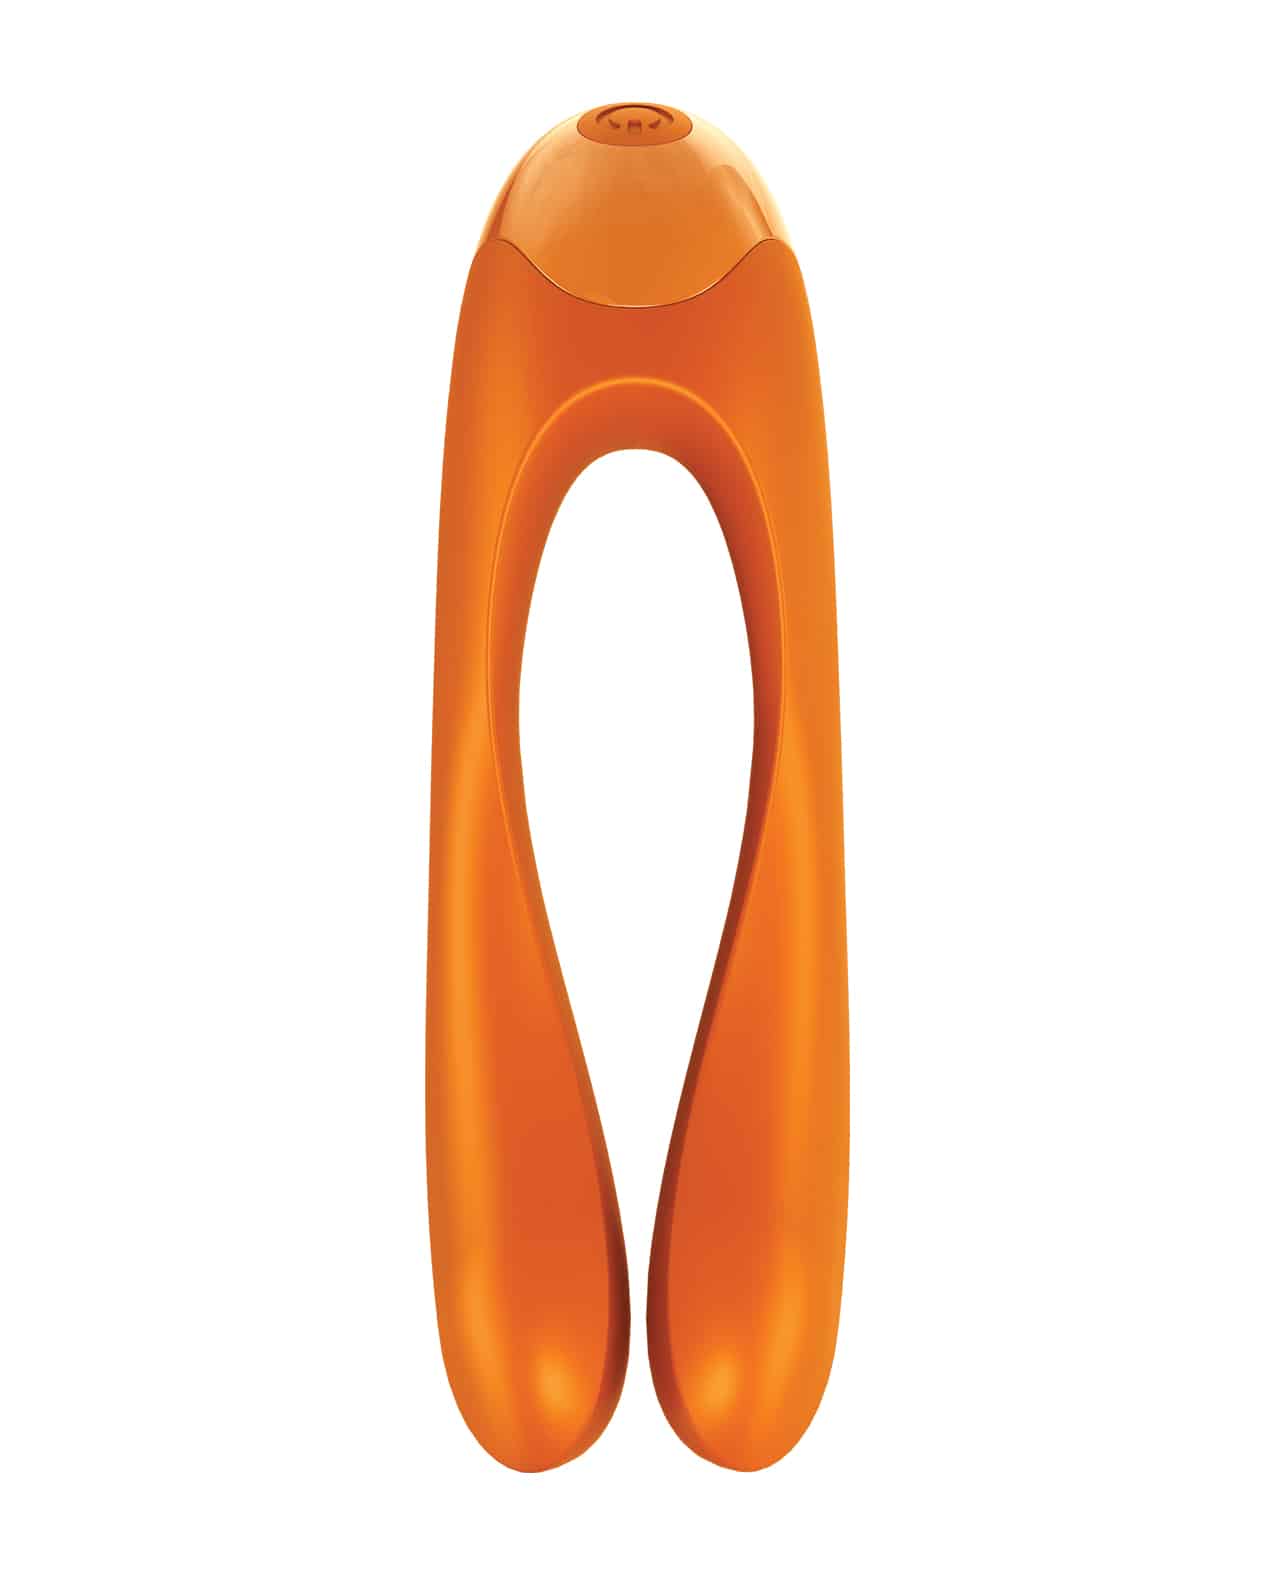 Satisfyer Candy Cane Orange Finger Vibrator